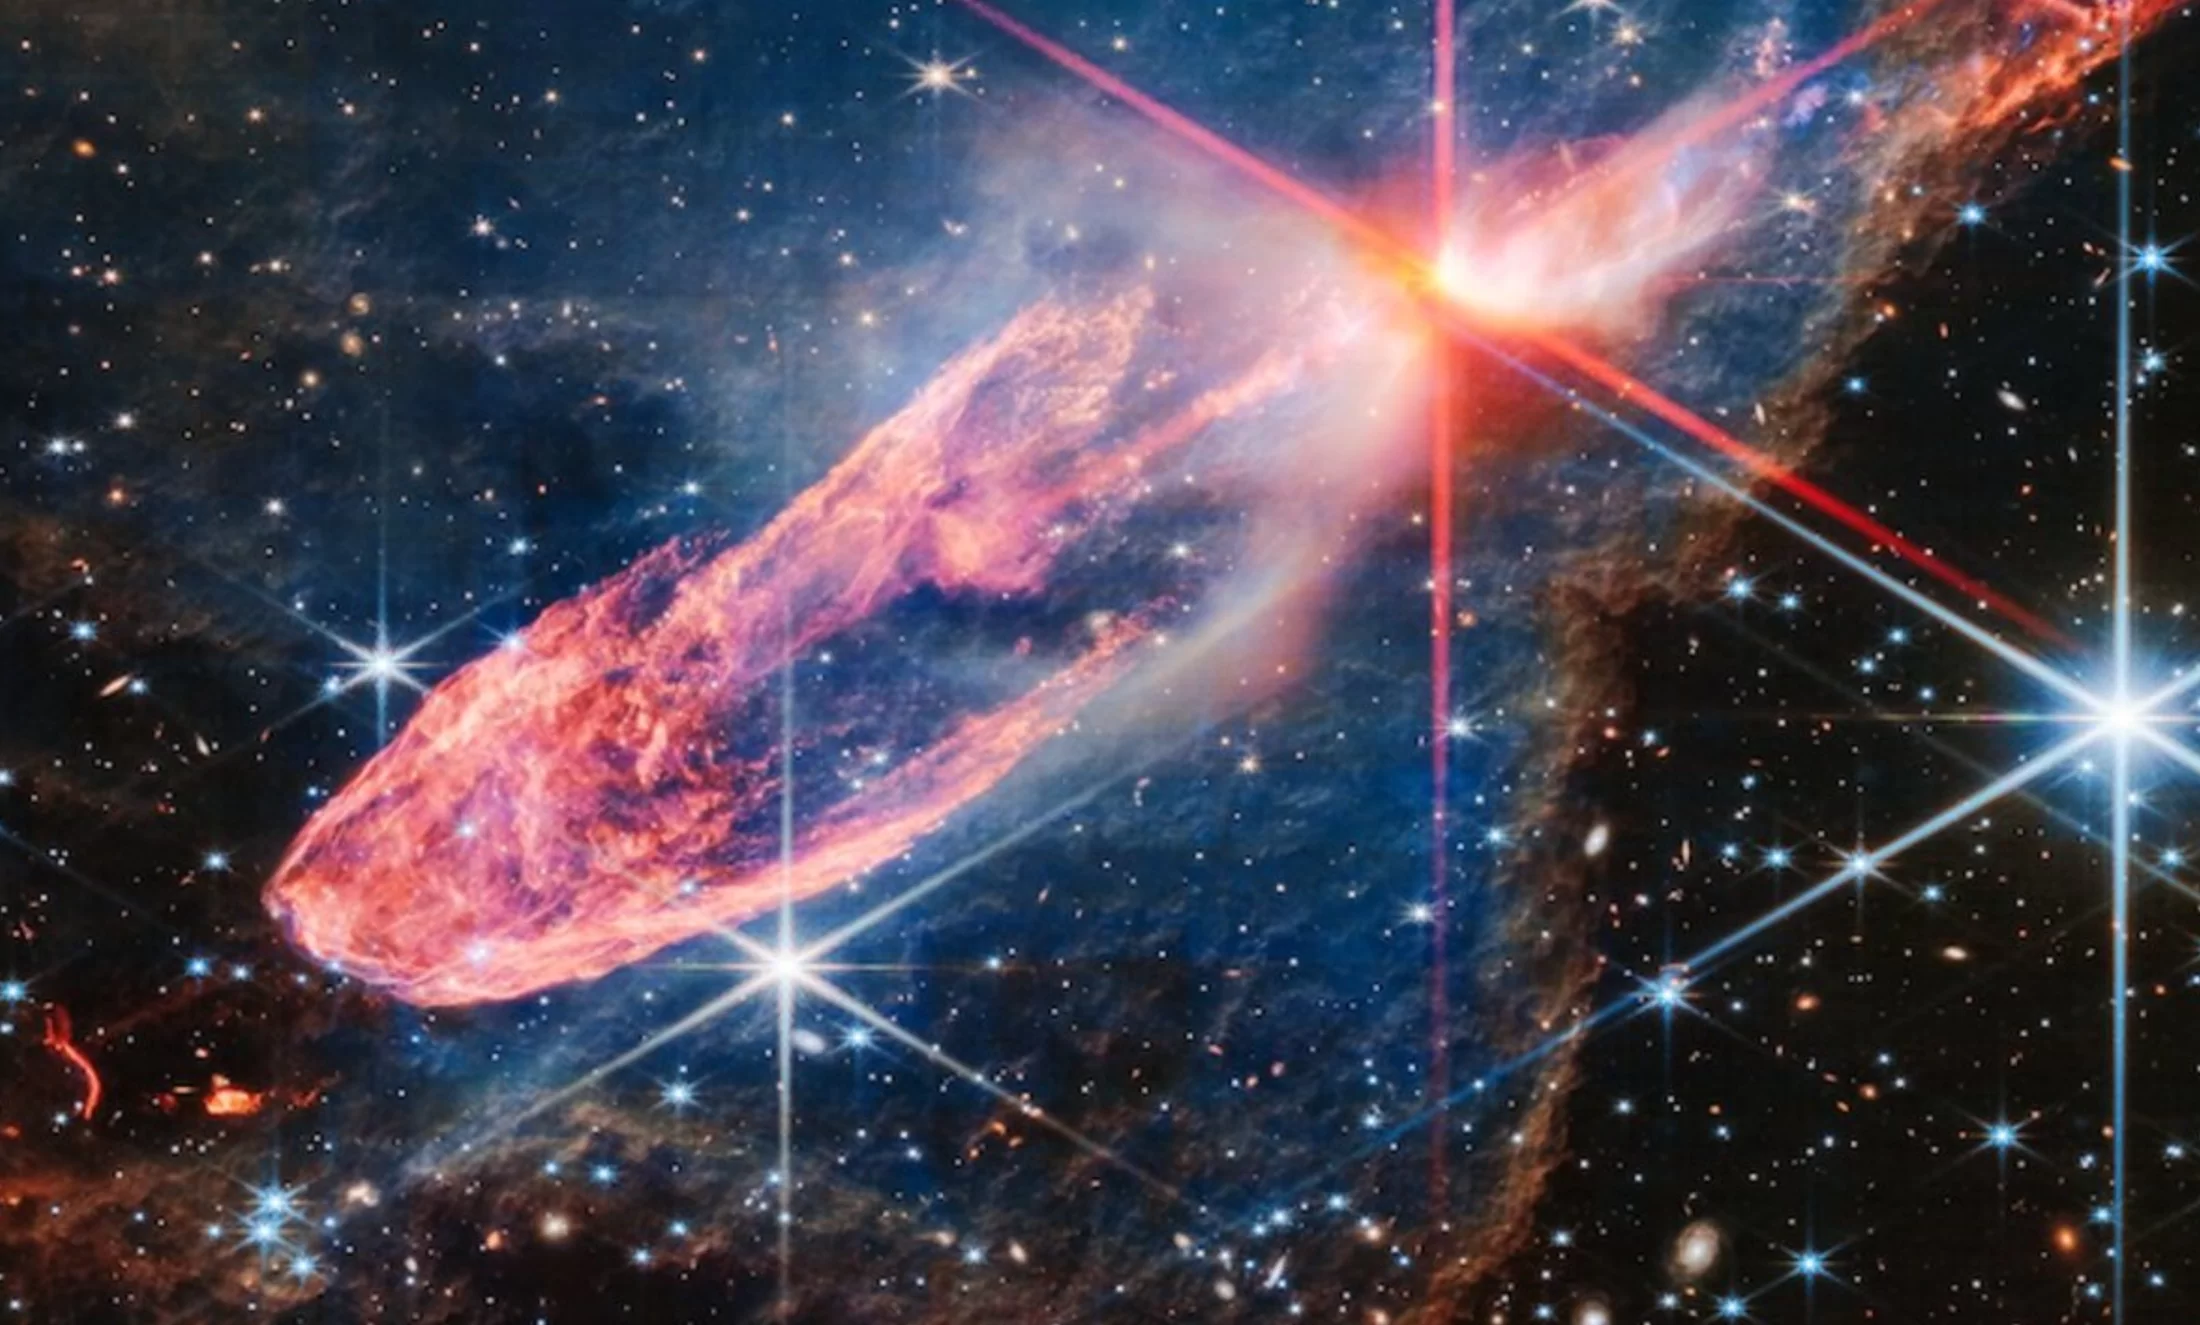 Izuzetno detaljna infracrvena slika JWST-a prikazuje zvijezde u aktivnom procesu formiranja. Zasluge NASA, ESA, CSA. Obrada slike Joseph DePasquale STScI.